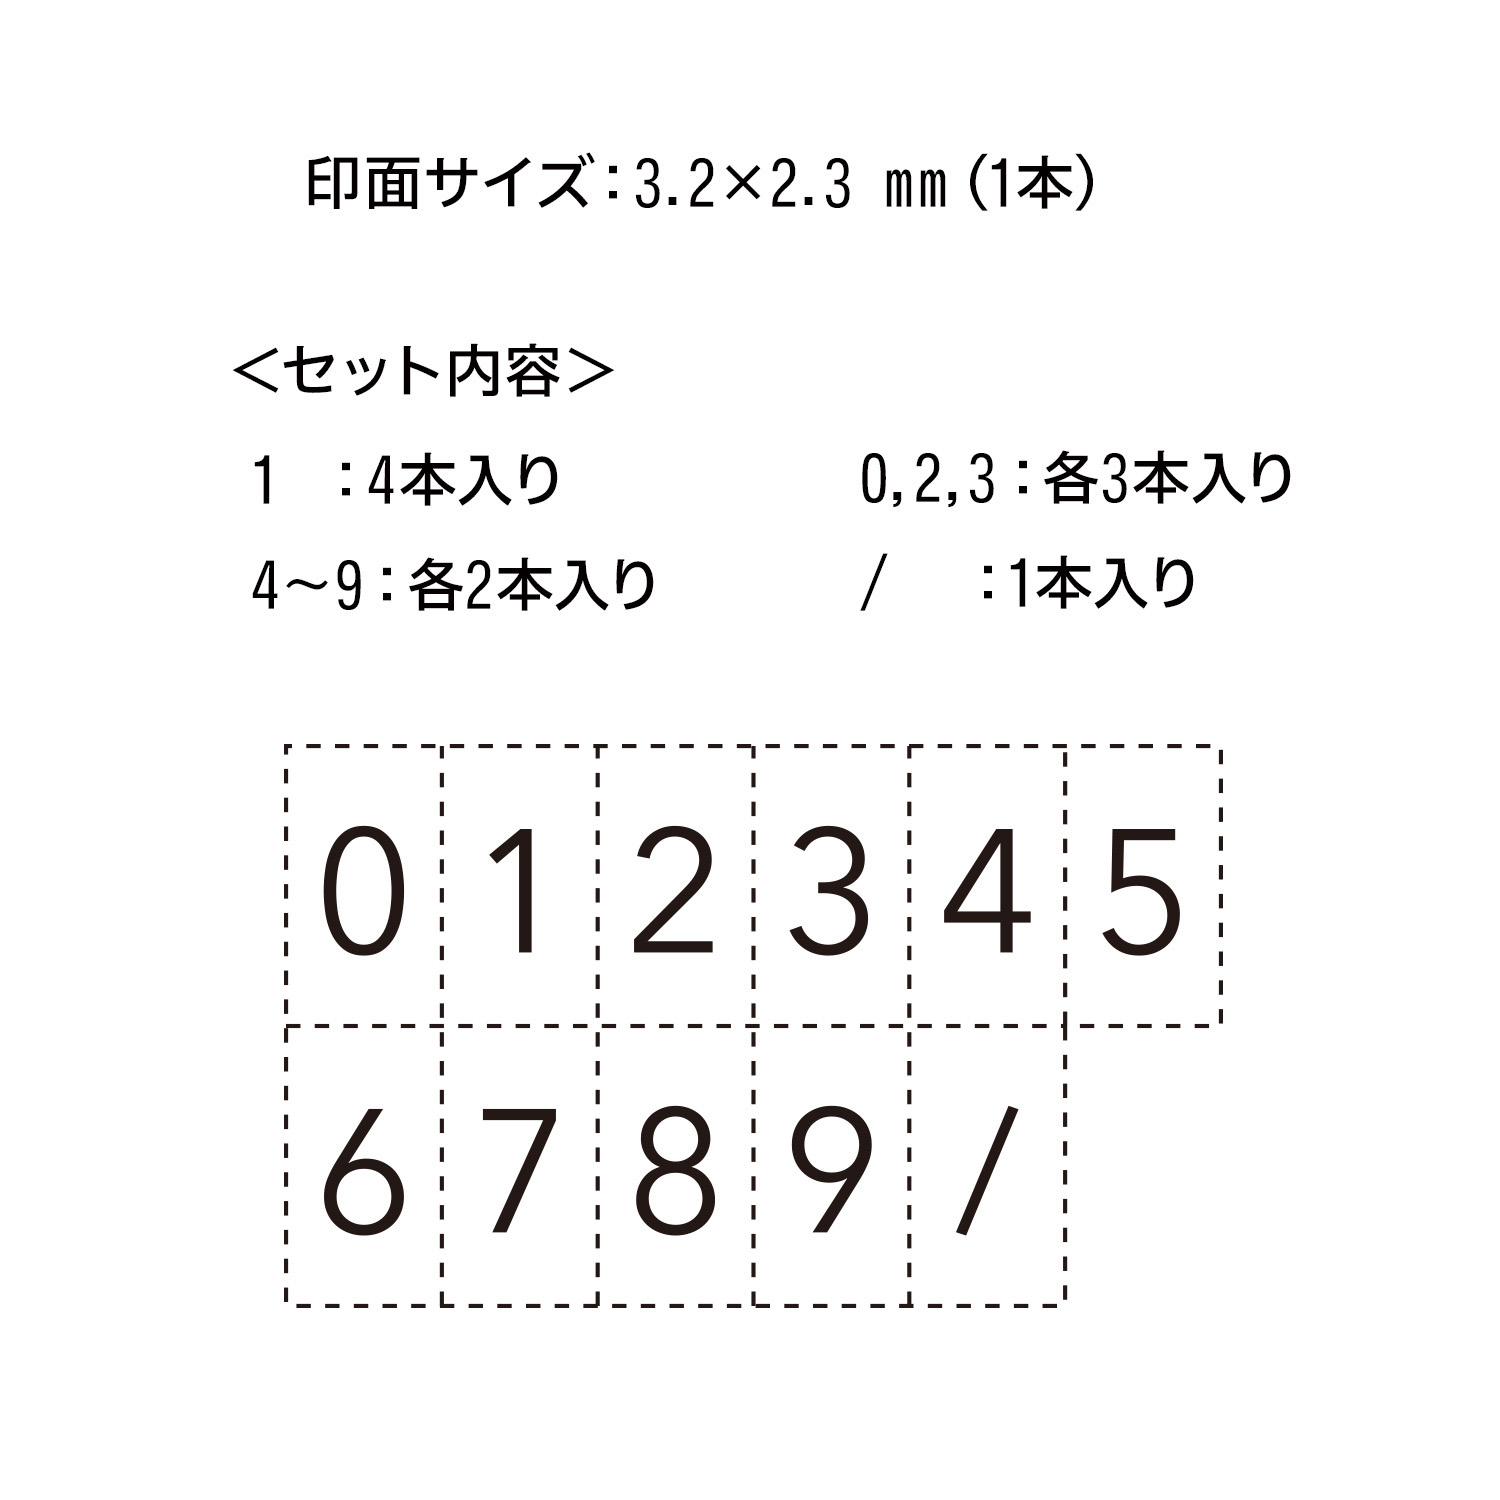 Shachihata シヤチハタ　連結数字スタンプ　ナンバリング「NET Asahi」